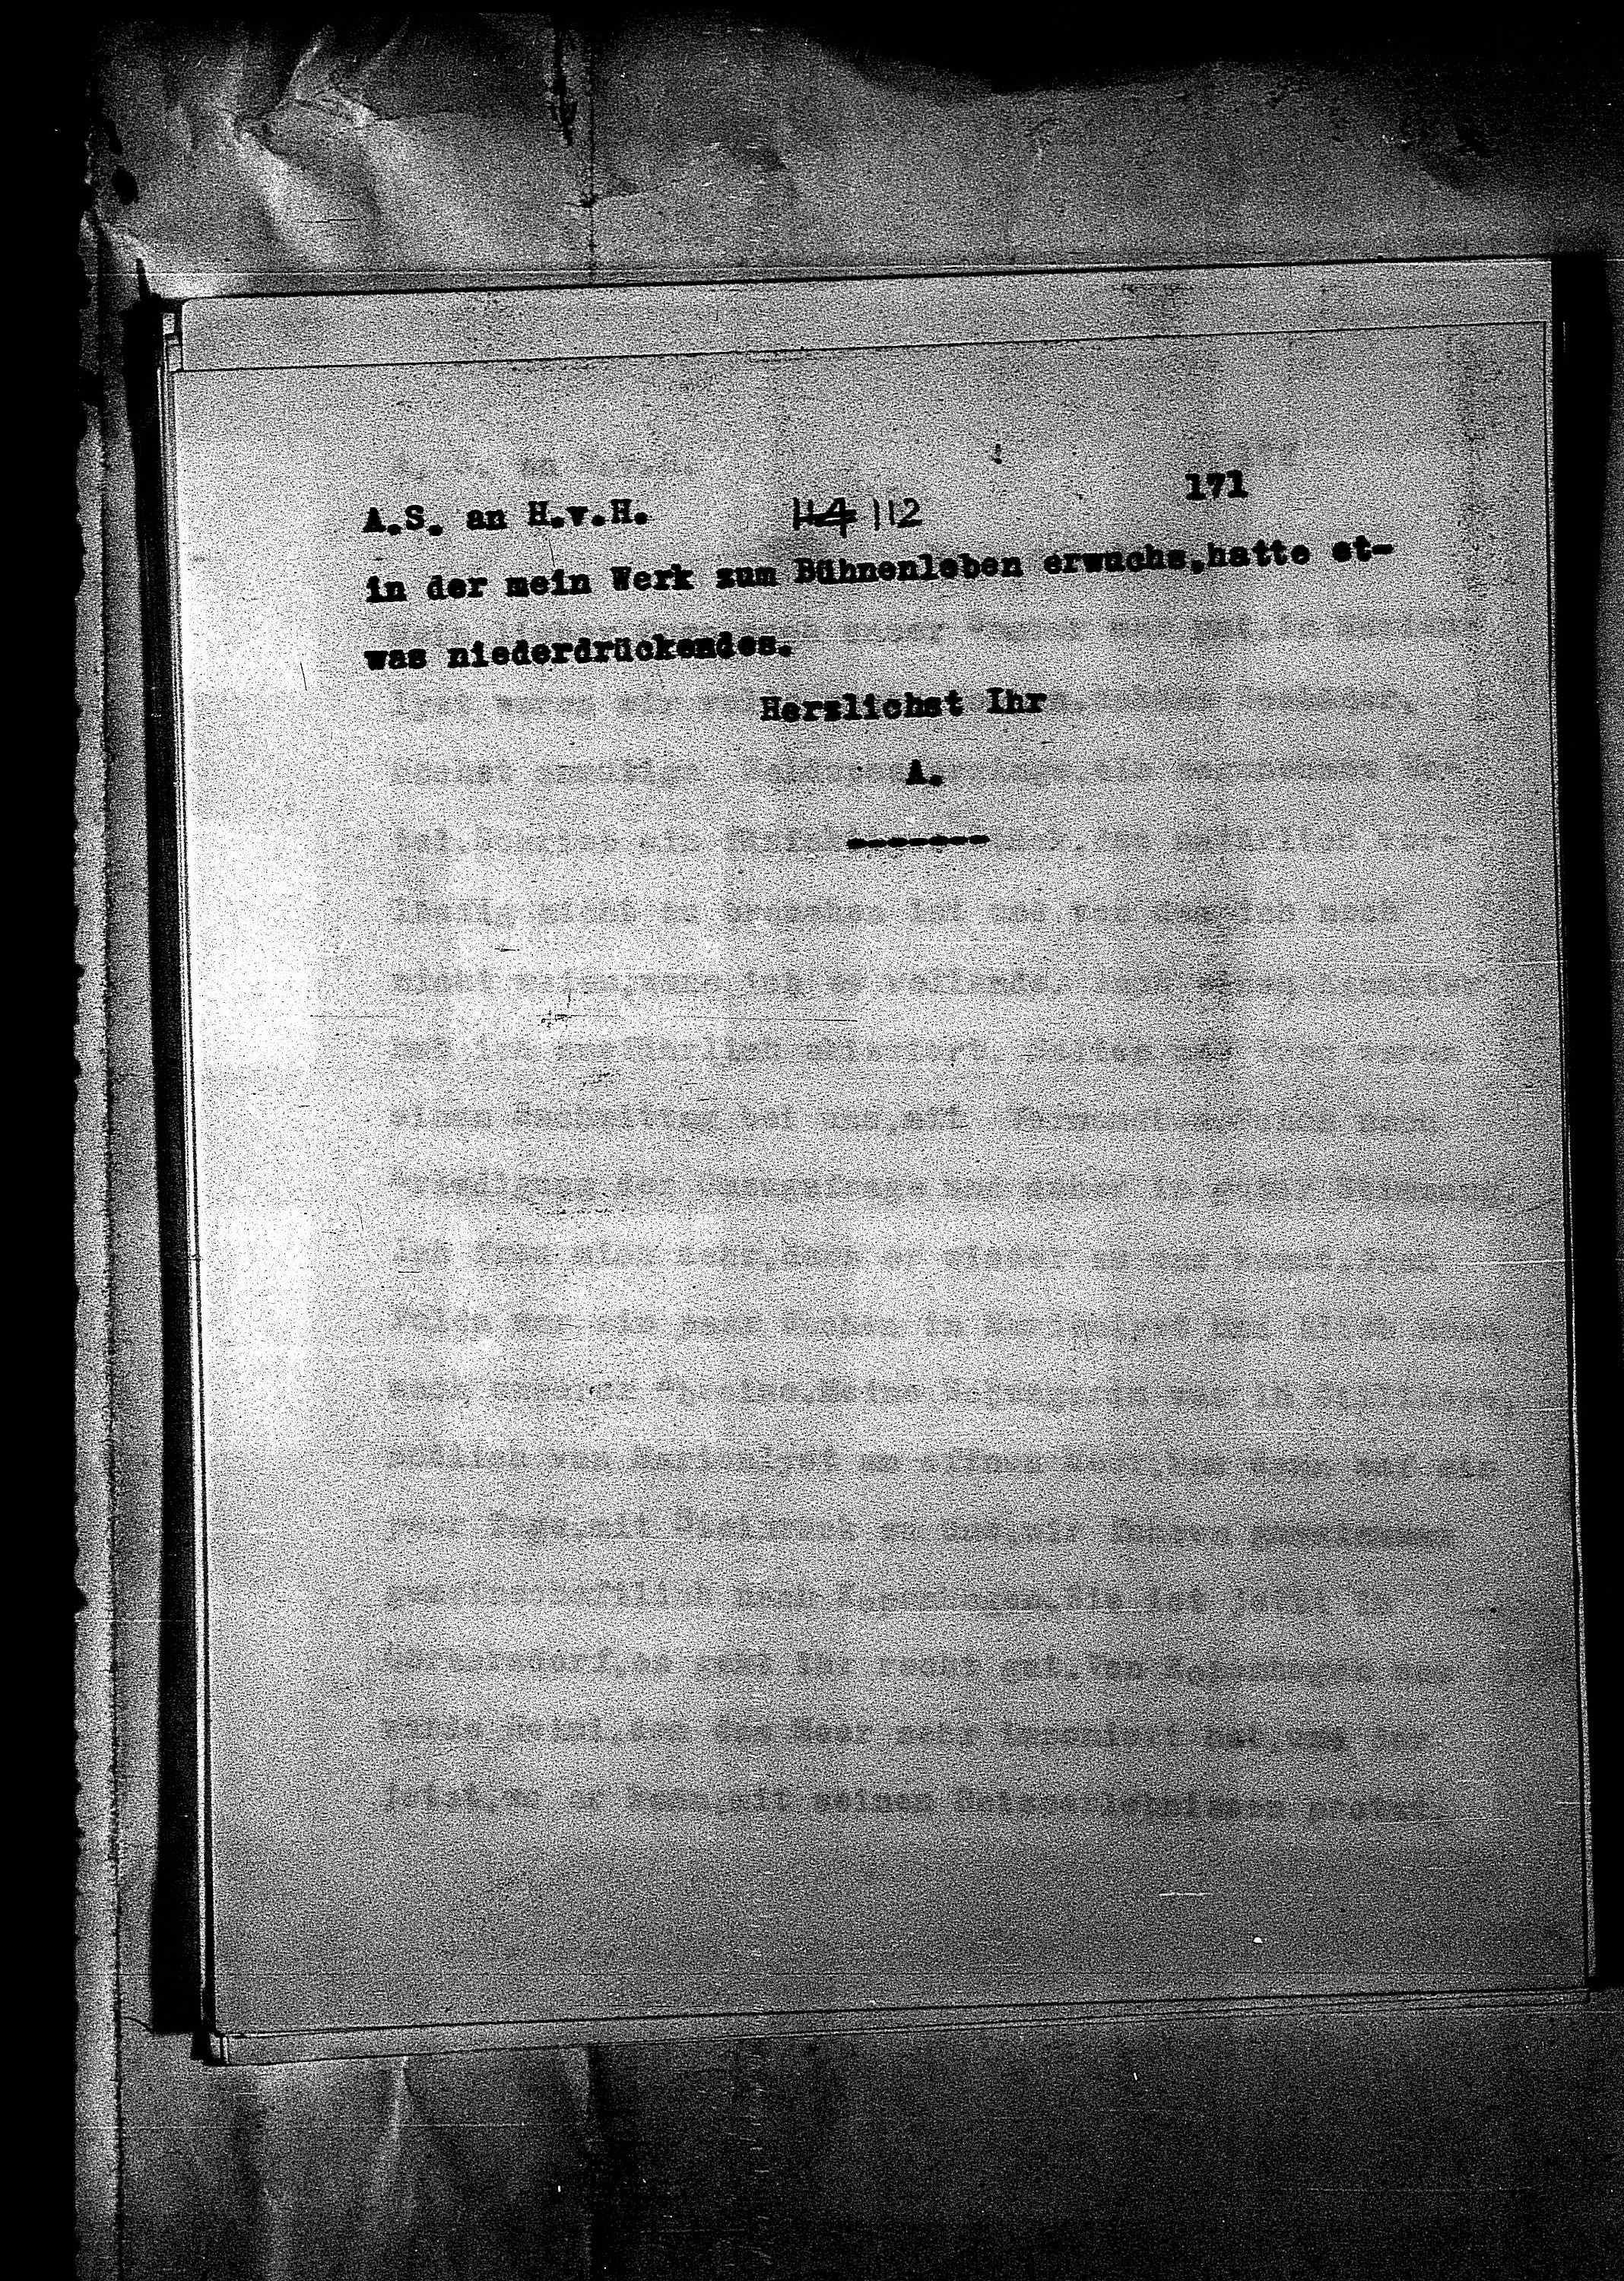 Vorschaubild für Hofmannsthal, Hugo von_AS an HvH Abschrift, HvH an AS, Originale (Mikrofilm 38), Seite 177